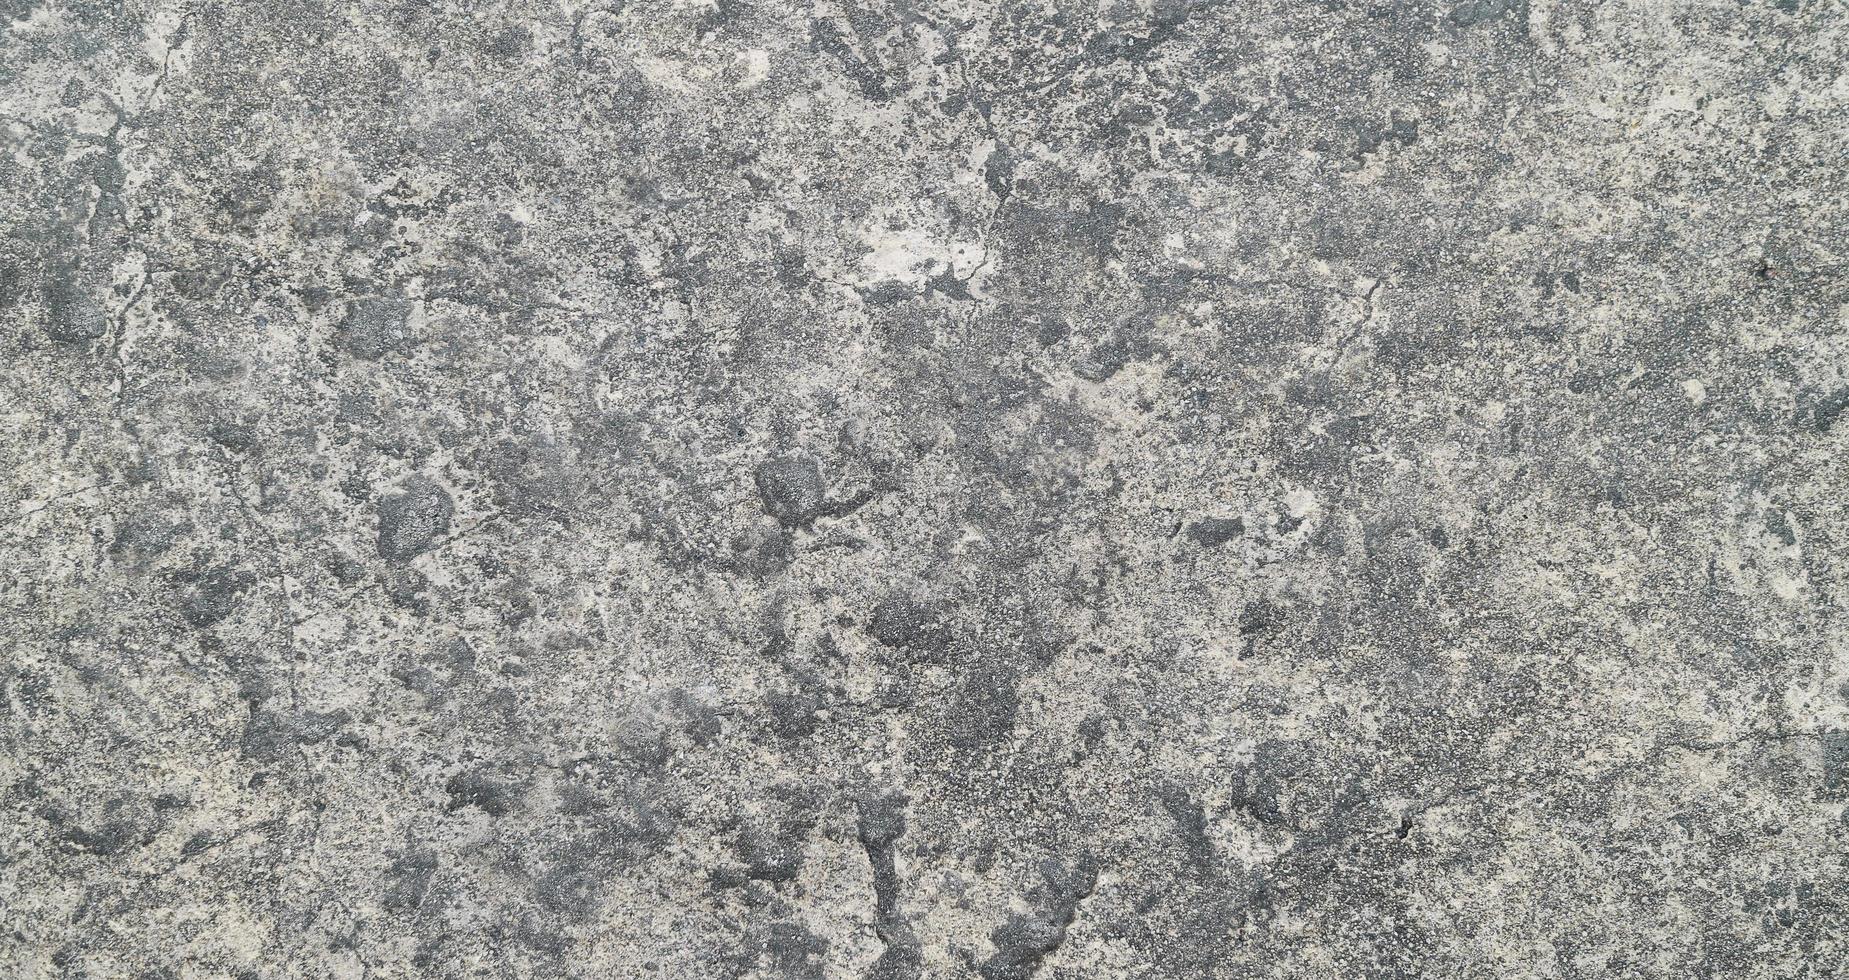 grigio vecchio cemento texture di sfondo. cemento orizzontale e struttura del calcestruzzo. foto